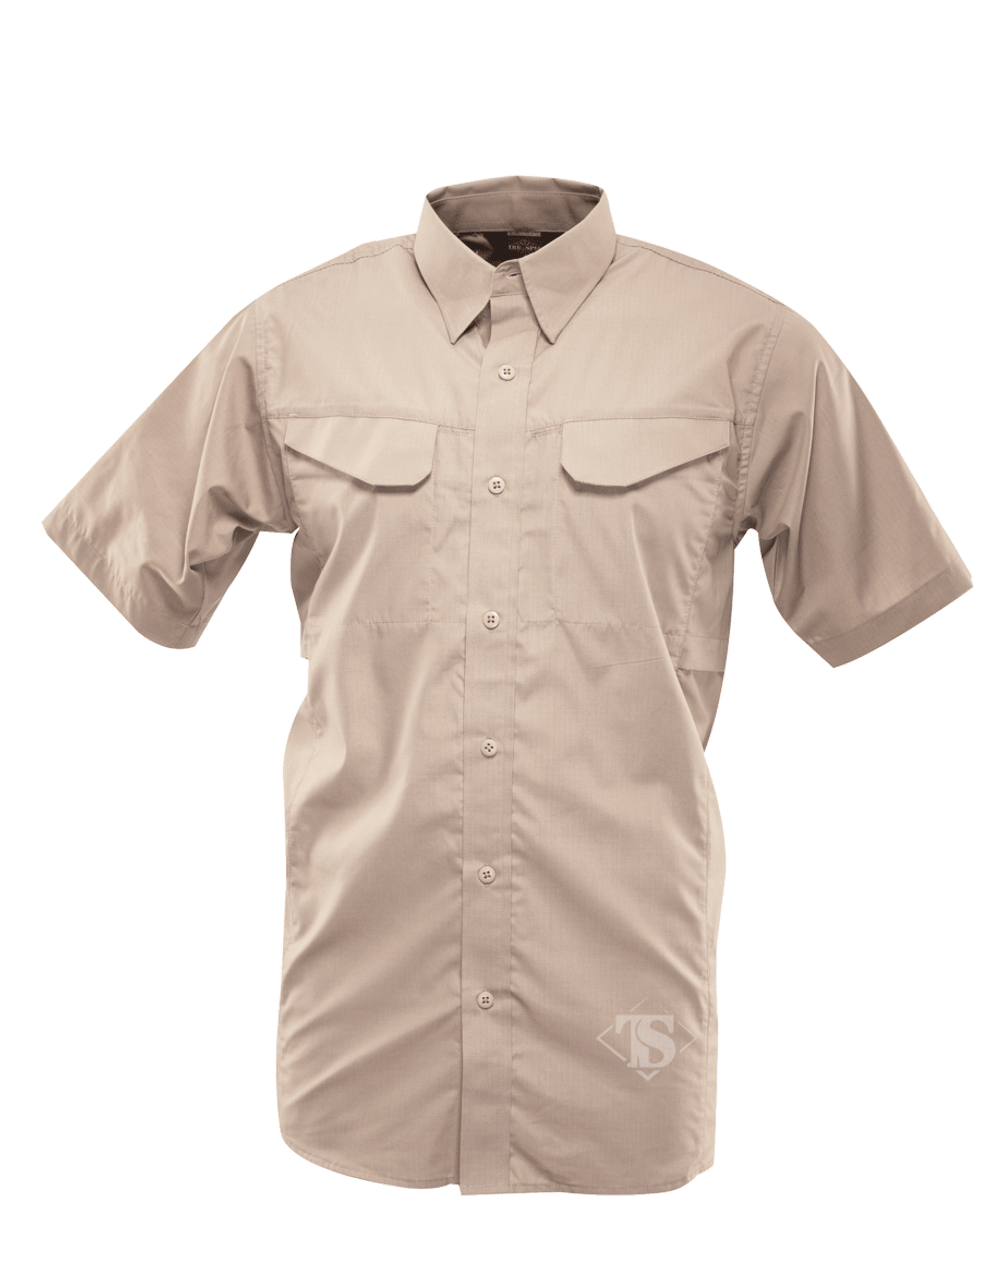 Tru-Spec 1092 24-7 Series Men's Ultralight Short Sleeve Field Shirt